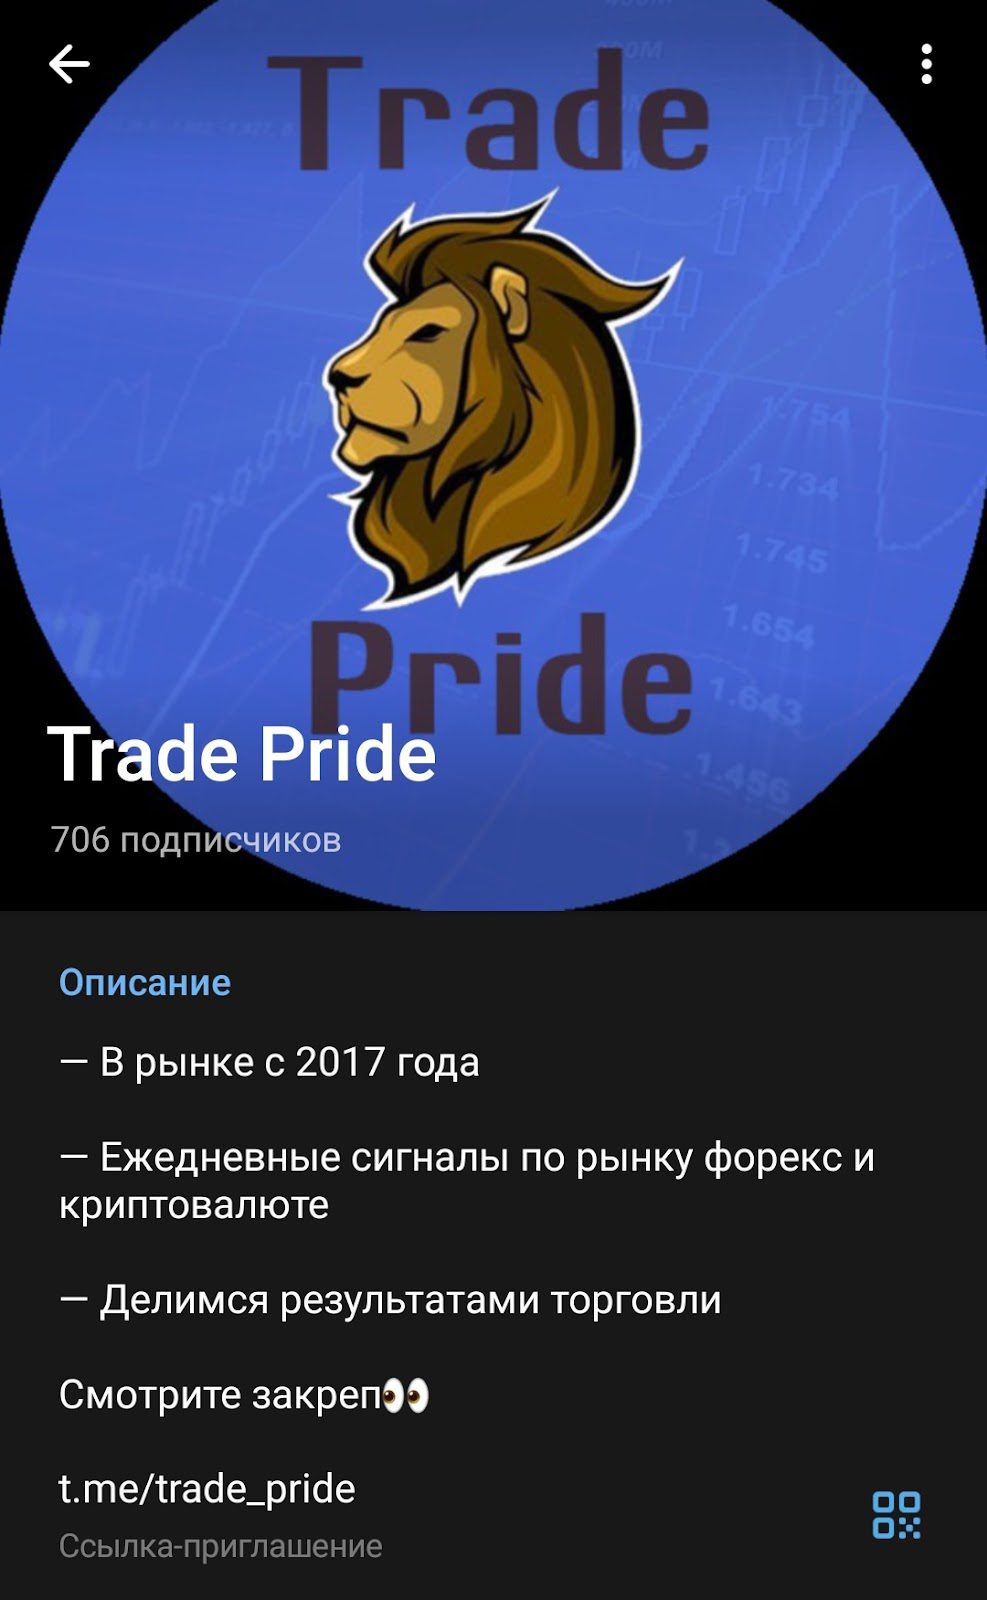 Trade Pride telegram